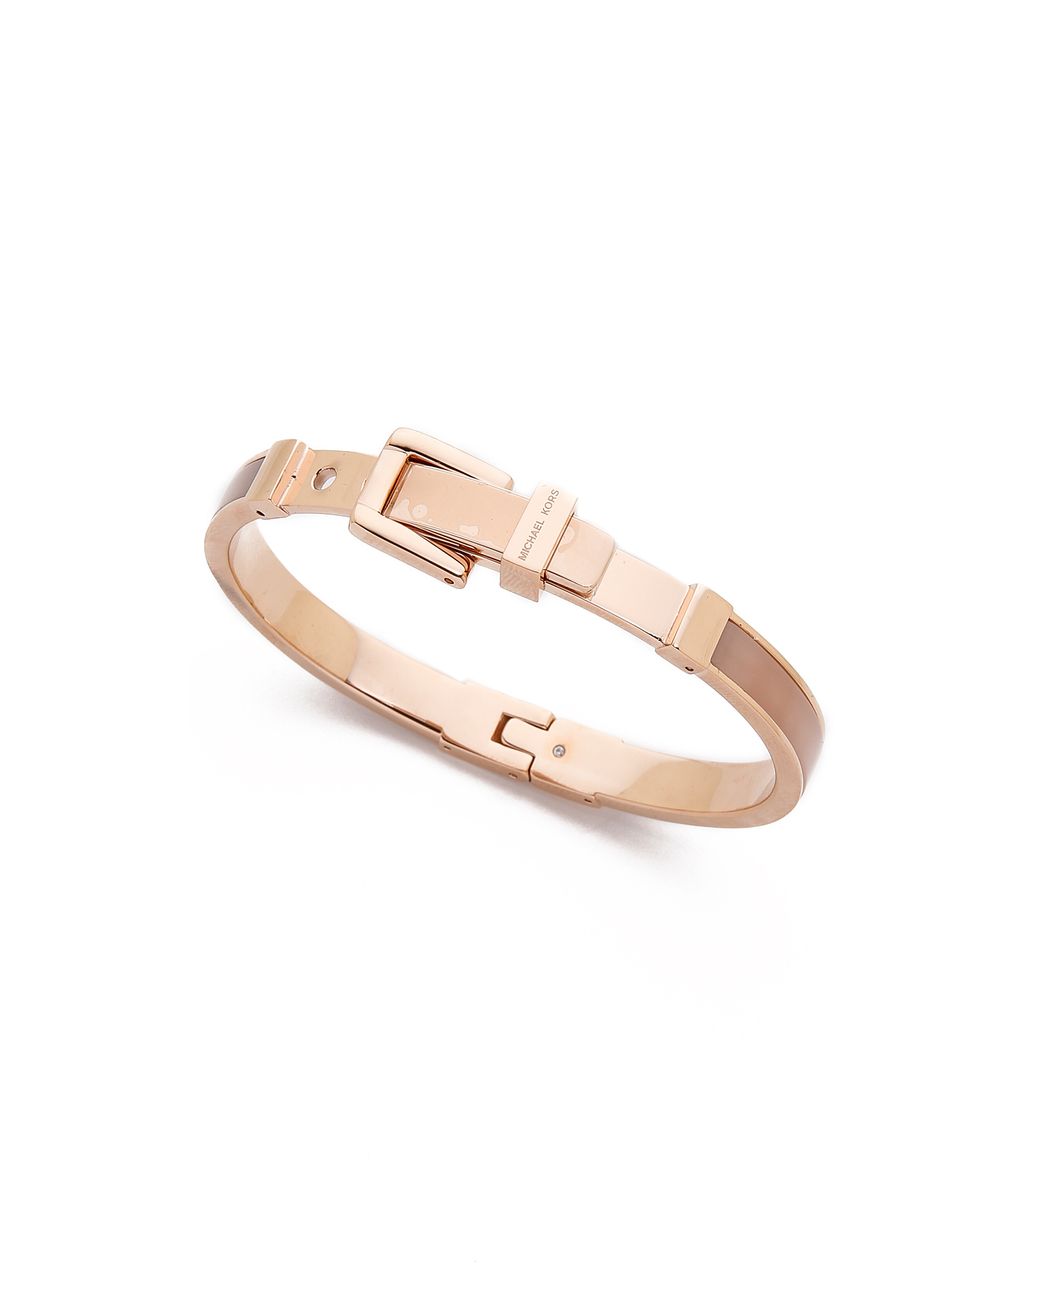 Michael Kors Mk Buckle Bangle Bracelet - Rose Gold in Pink | Lyst